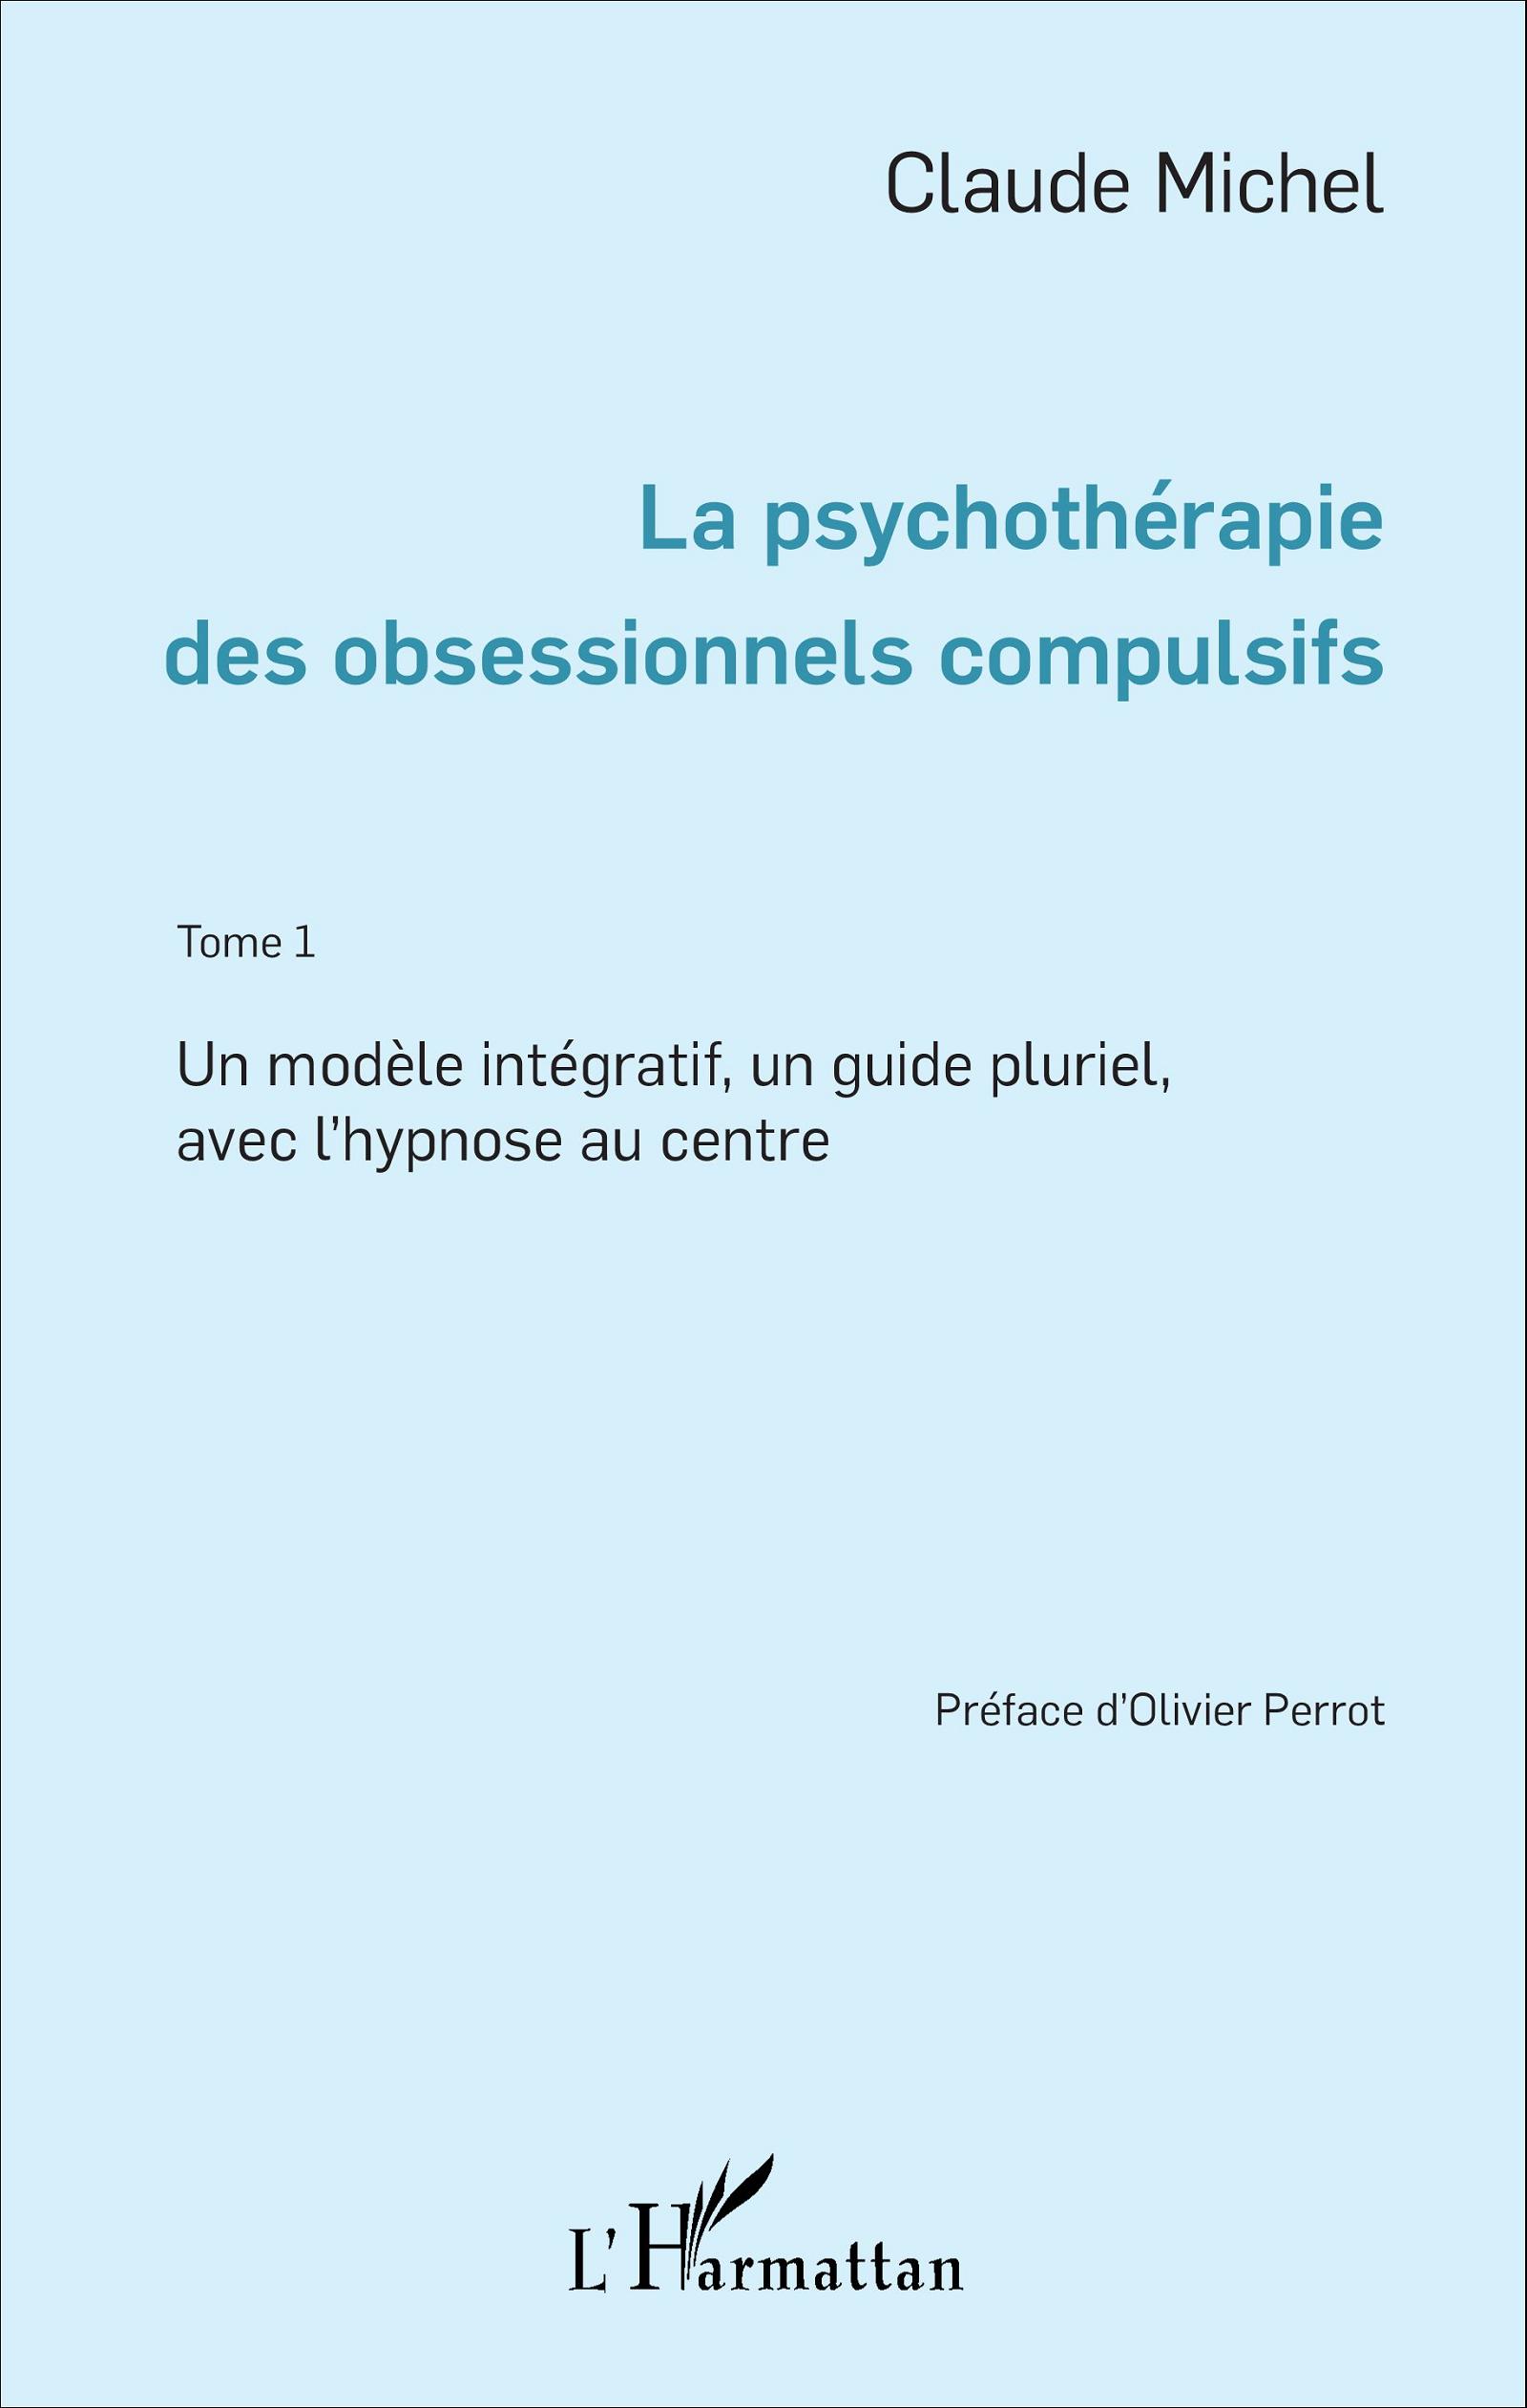 La psychothérapie des obsessionnels compulsifs. Claude Michel